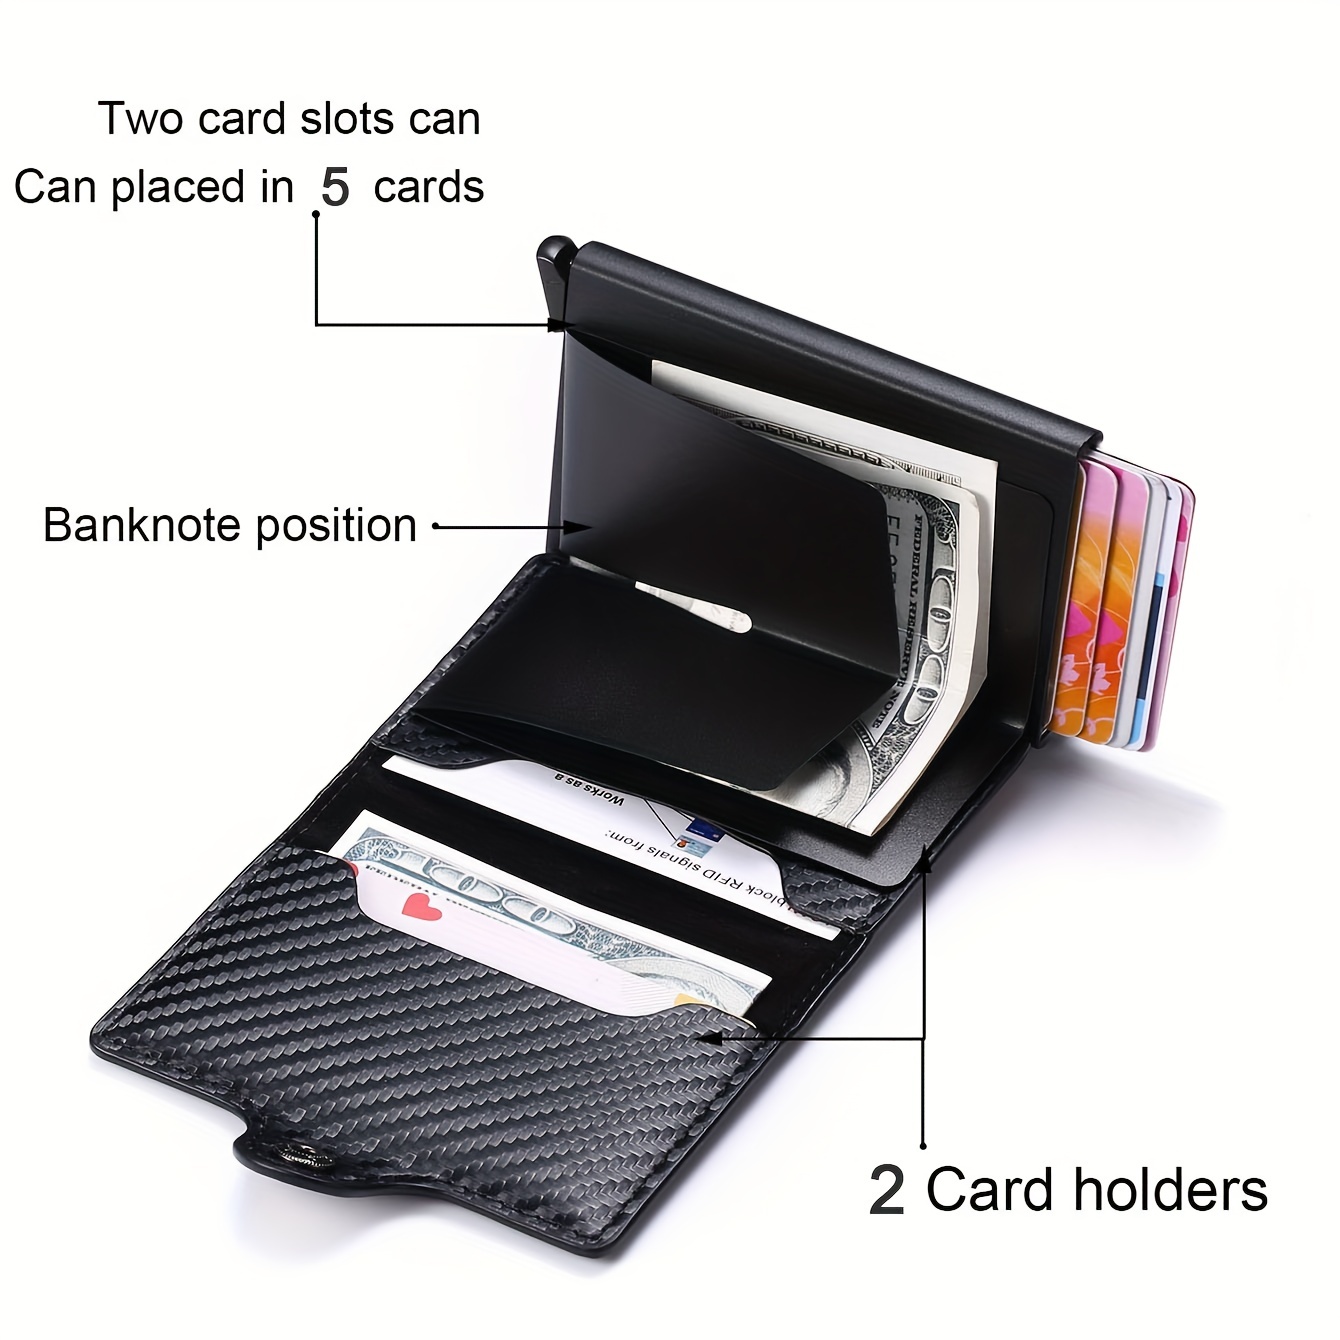 Men's Wallets & Card Holders